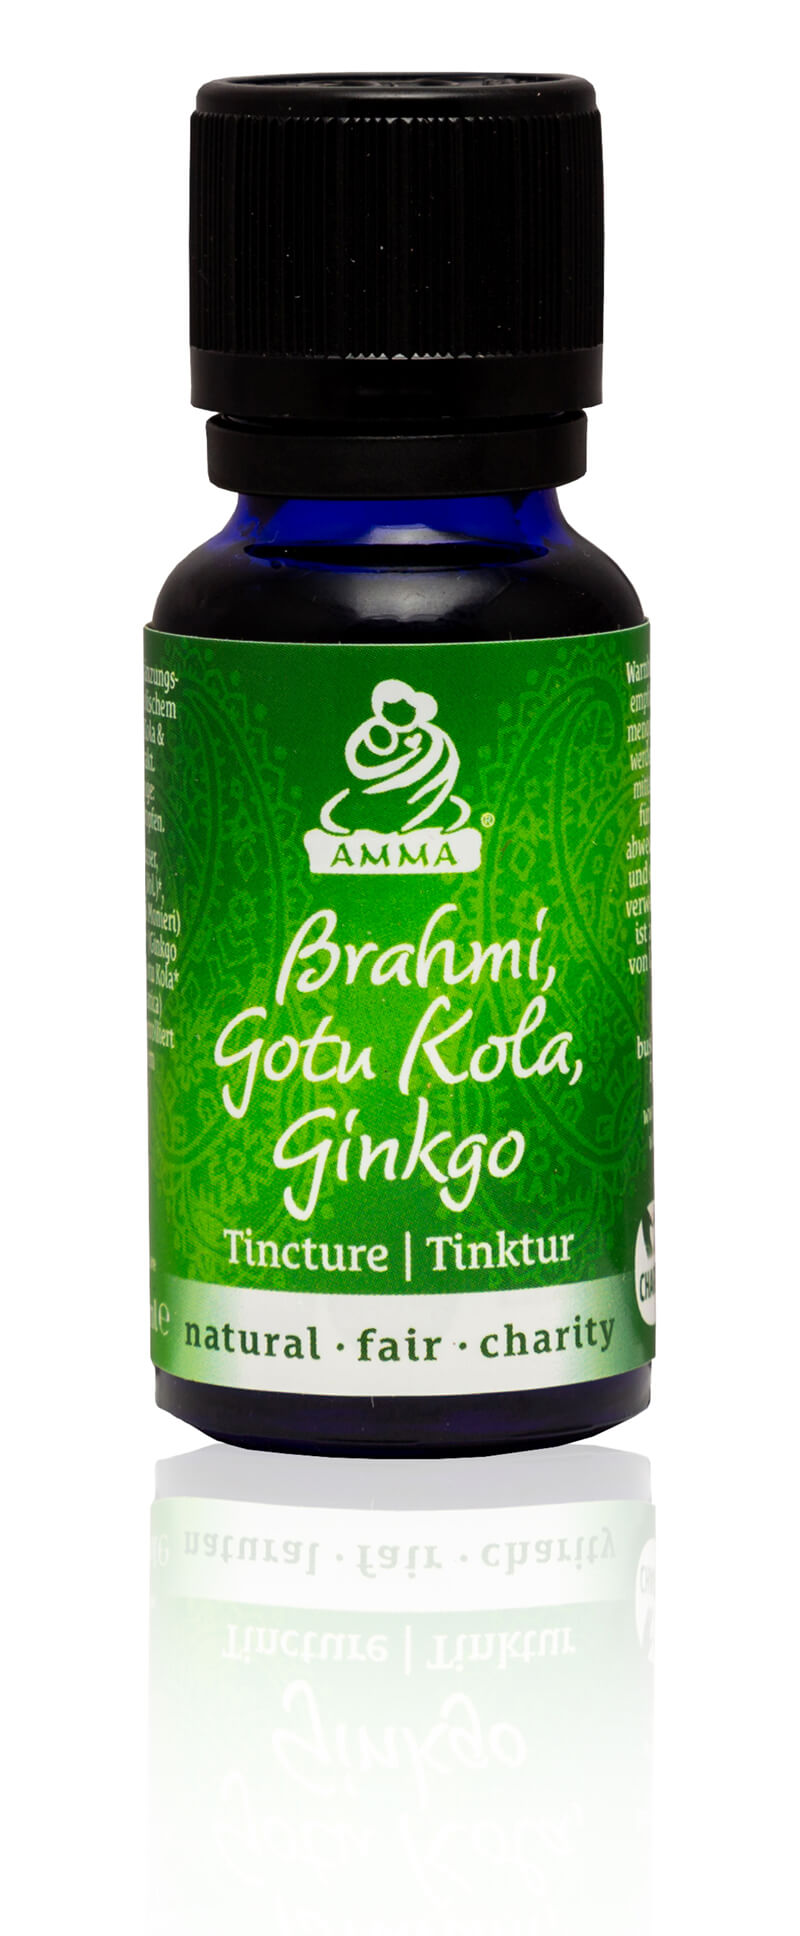 Brahmi, Gotu Kola & Gingko Tincture, organic